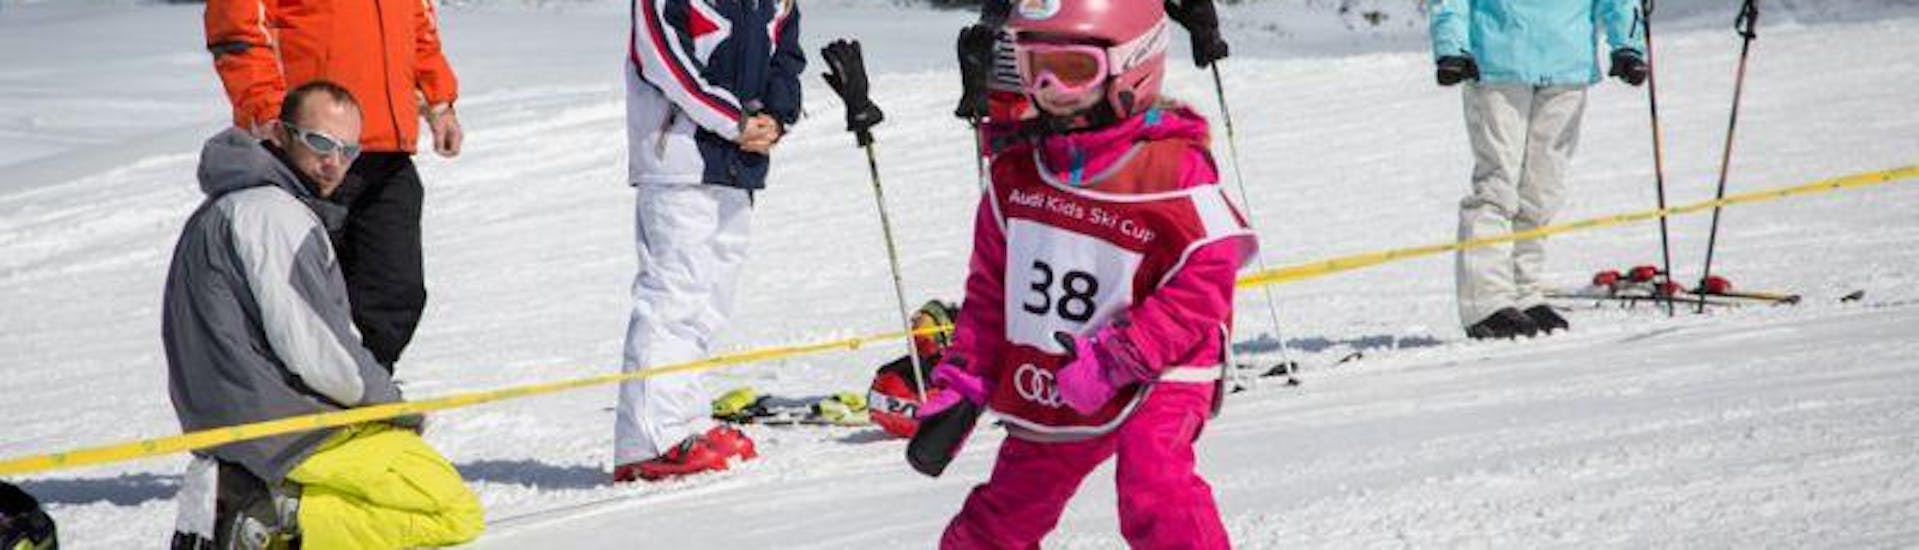 Kinder-Skikurs (5-12 J.) für Anfänger.